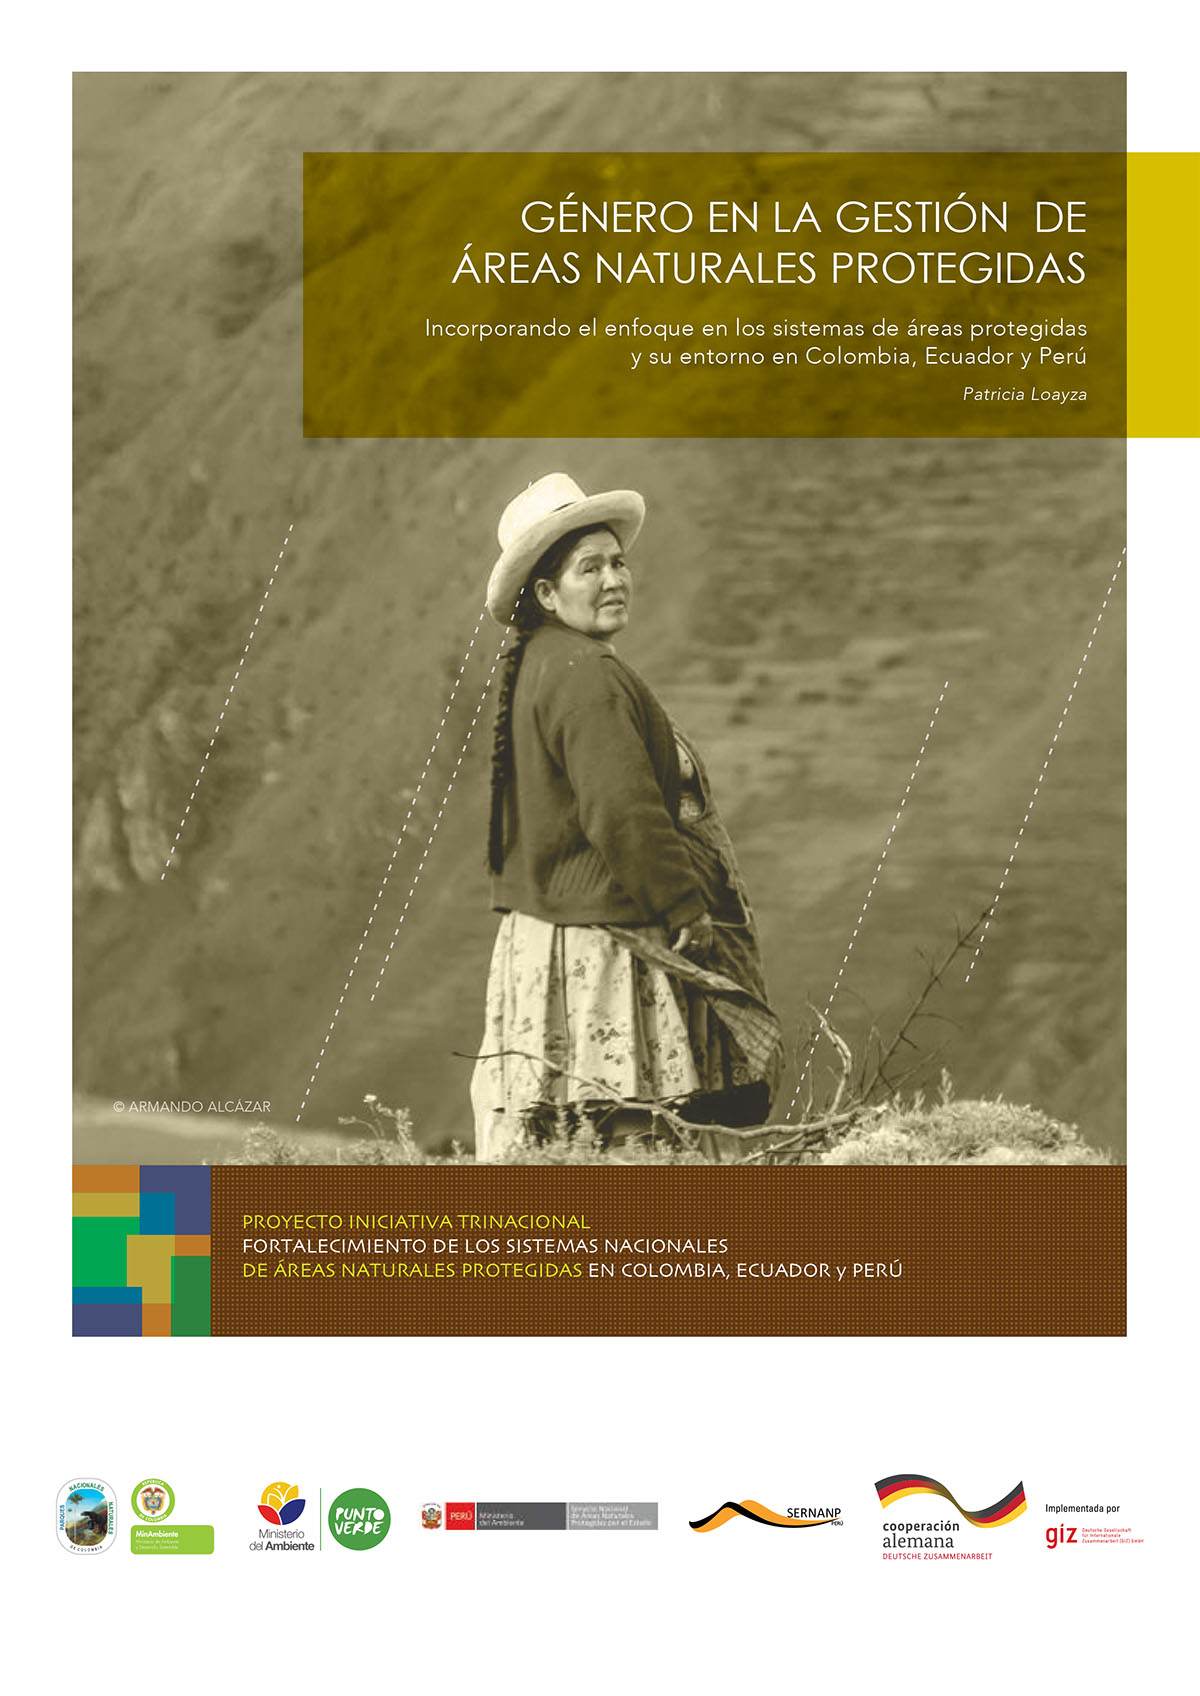 Loayza, Patricia <br>Género en la Gestión de Áreas Naturales Protegidas: incorporando el enfoque en los sistemas de áreas protegidas y su entorno en Colombia, Ecuador y Perú<br/>Perú: Gesellschaft für Internationale Zusammenarbeit (GIZ) : Proyecto 